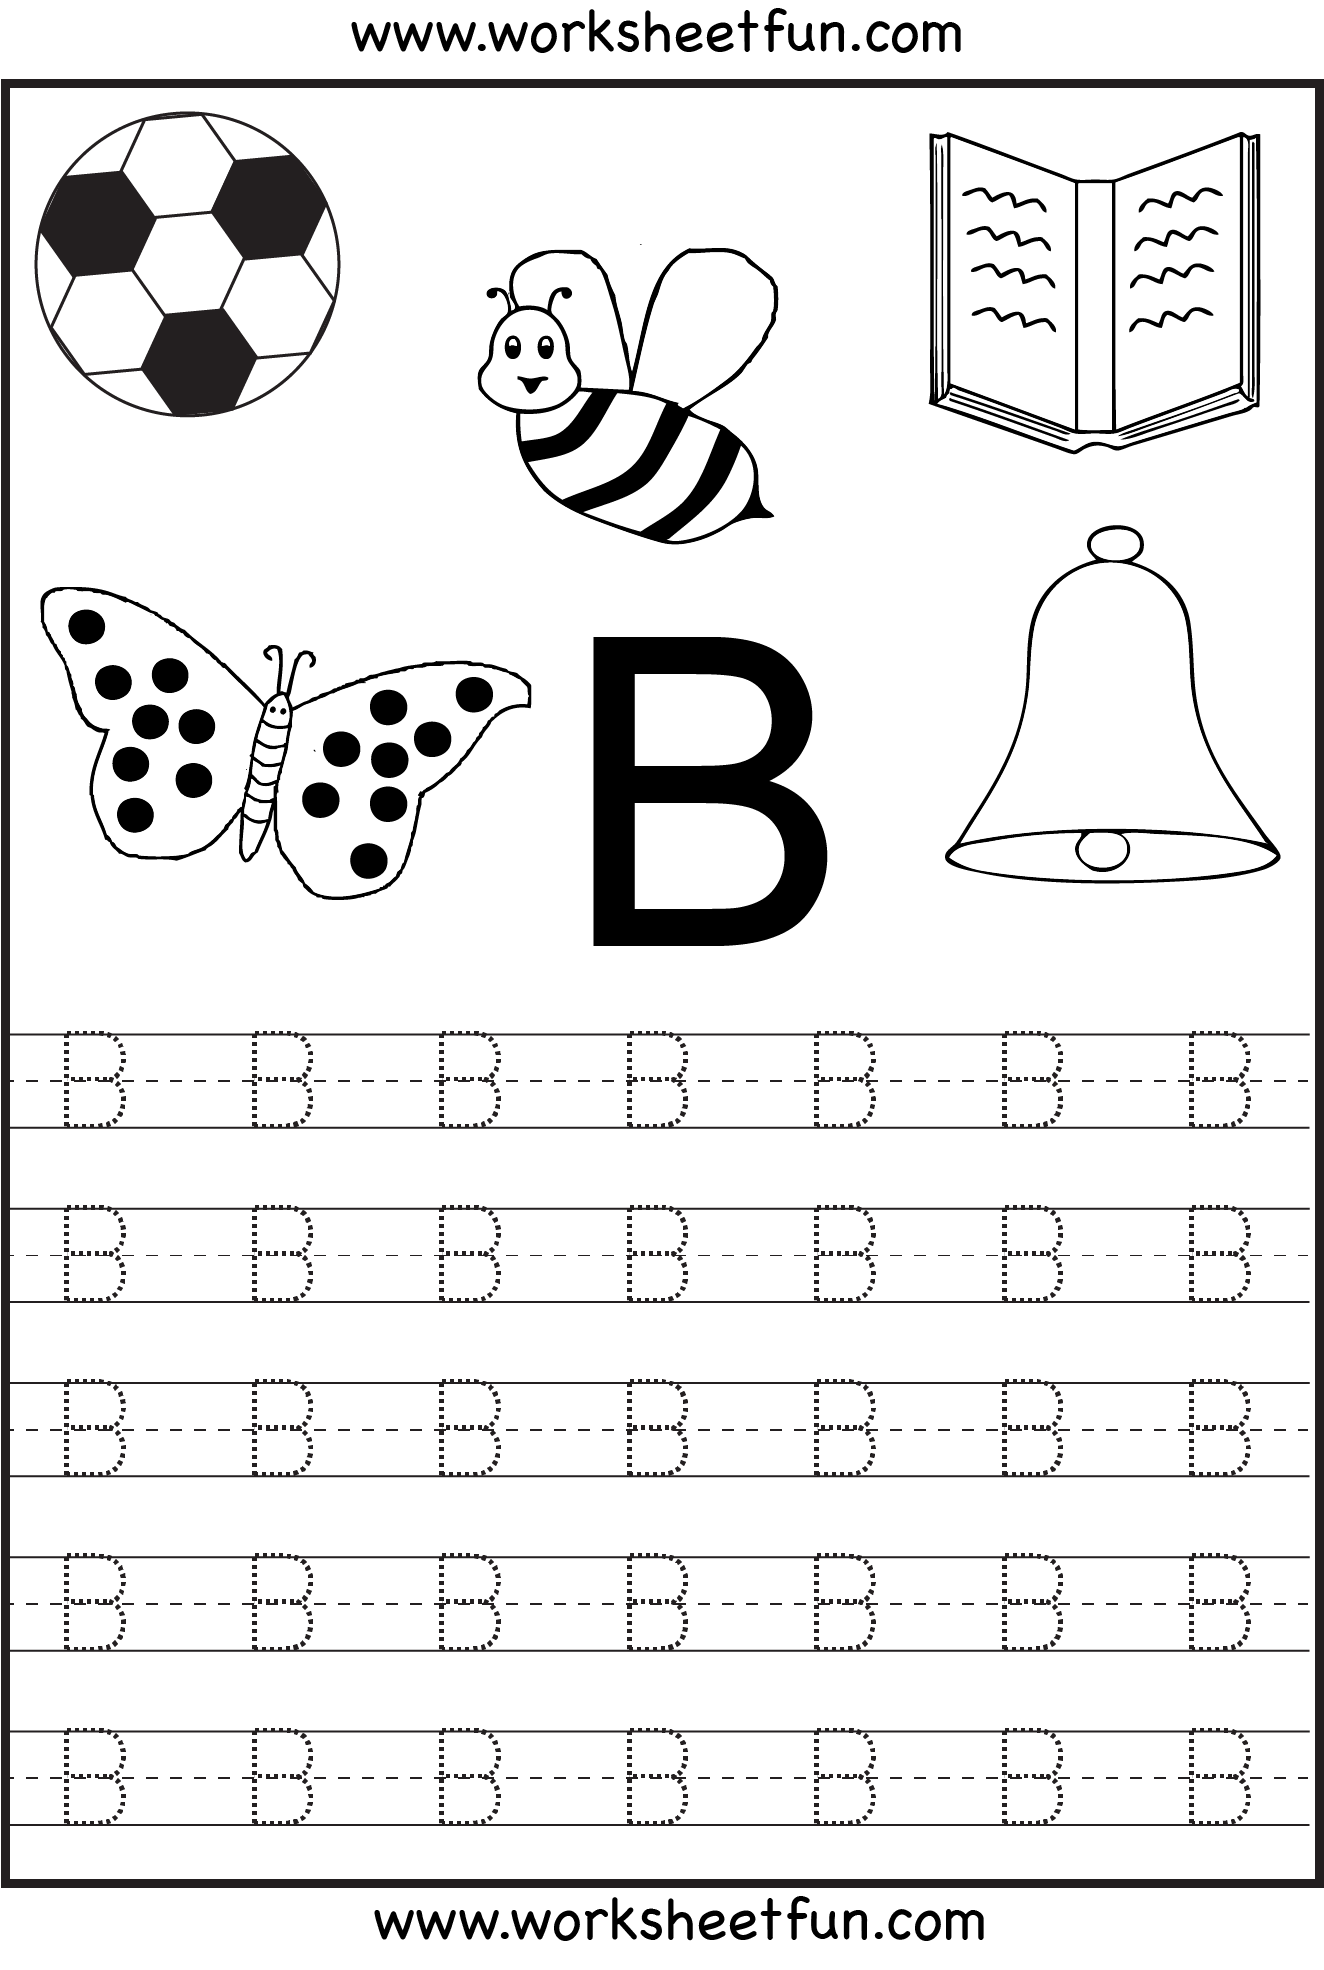 Free Printable Letter Tracing Worksheets For Kindergarten 26 Worksheets Alphabet Worksheets Preschool Alphabet Tracing Worksheets Learning Worksheets